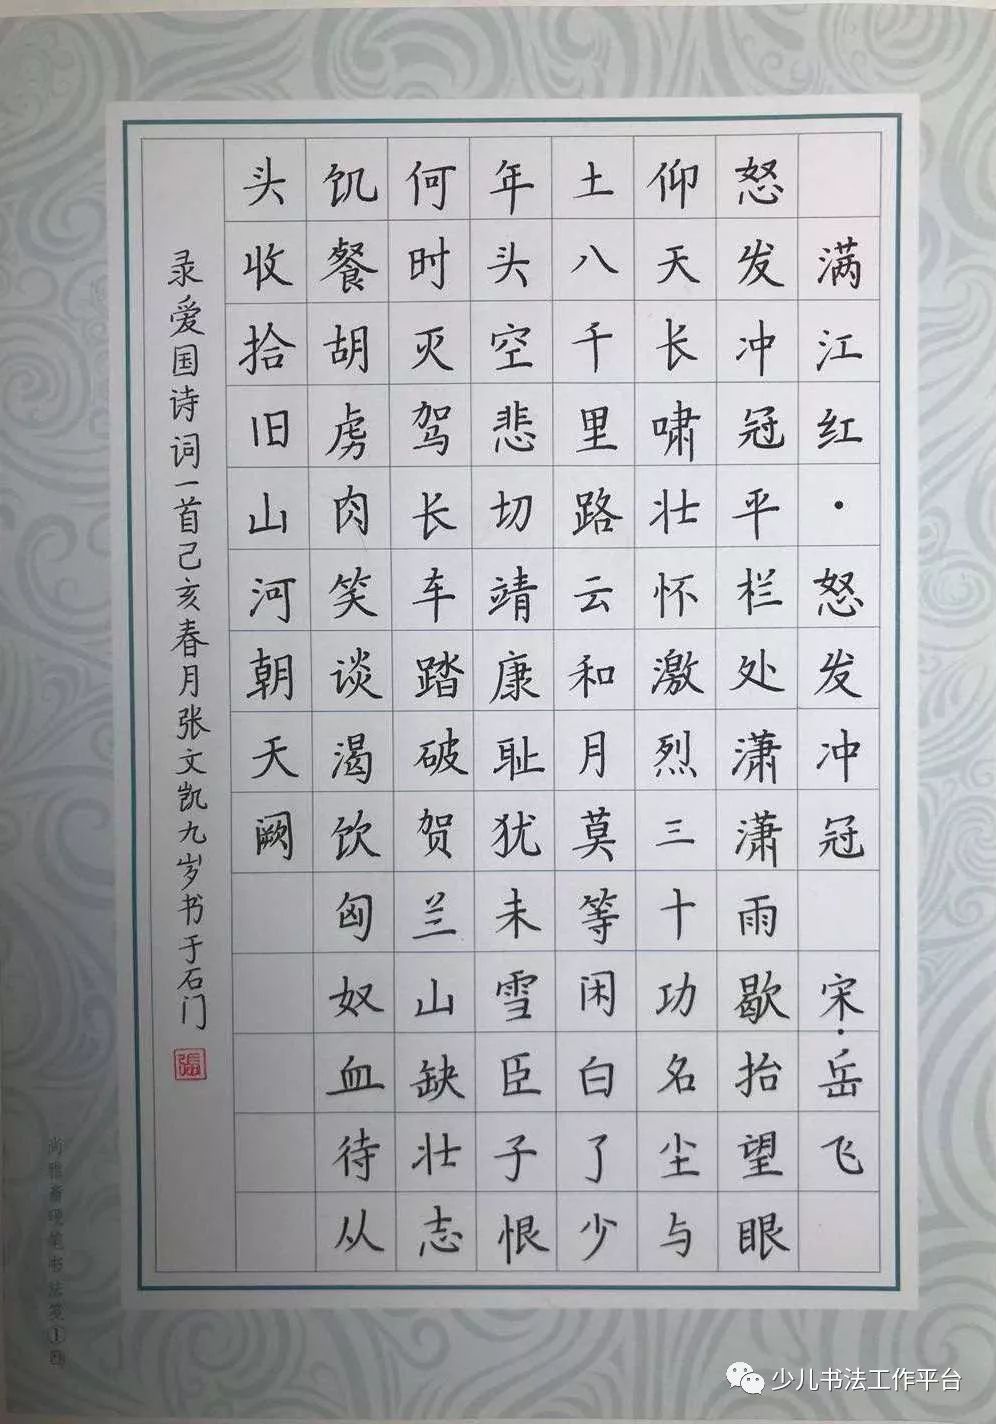 5,第六届少年儿童规范汉字书法大赛河北赛区一等奖; 6,2017年度河北